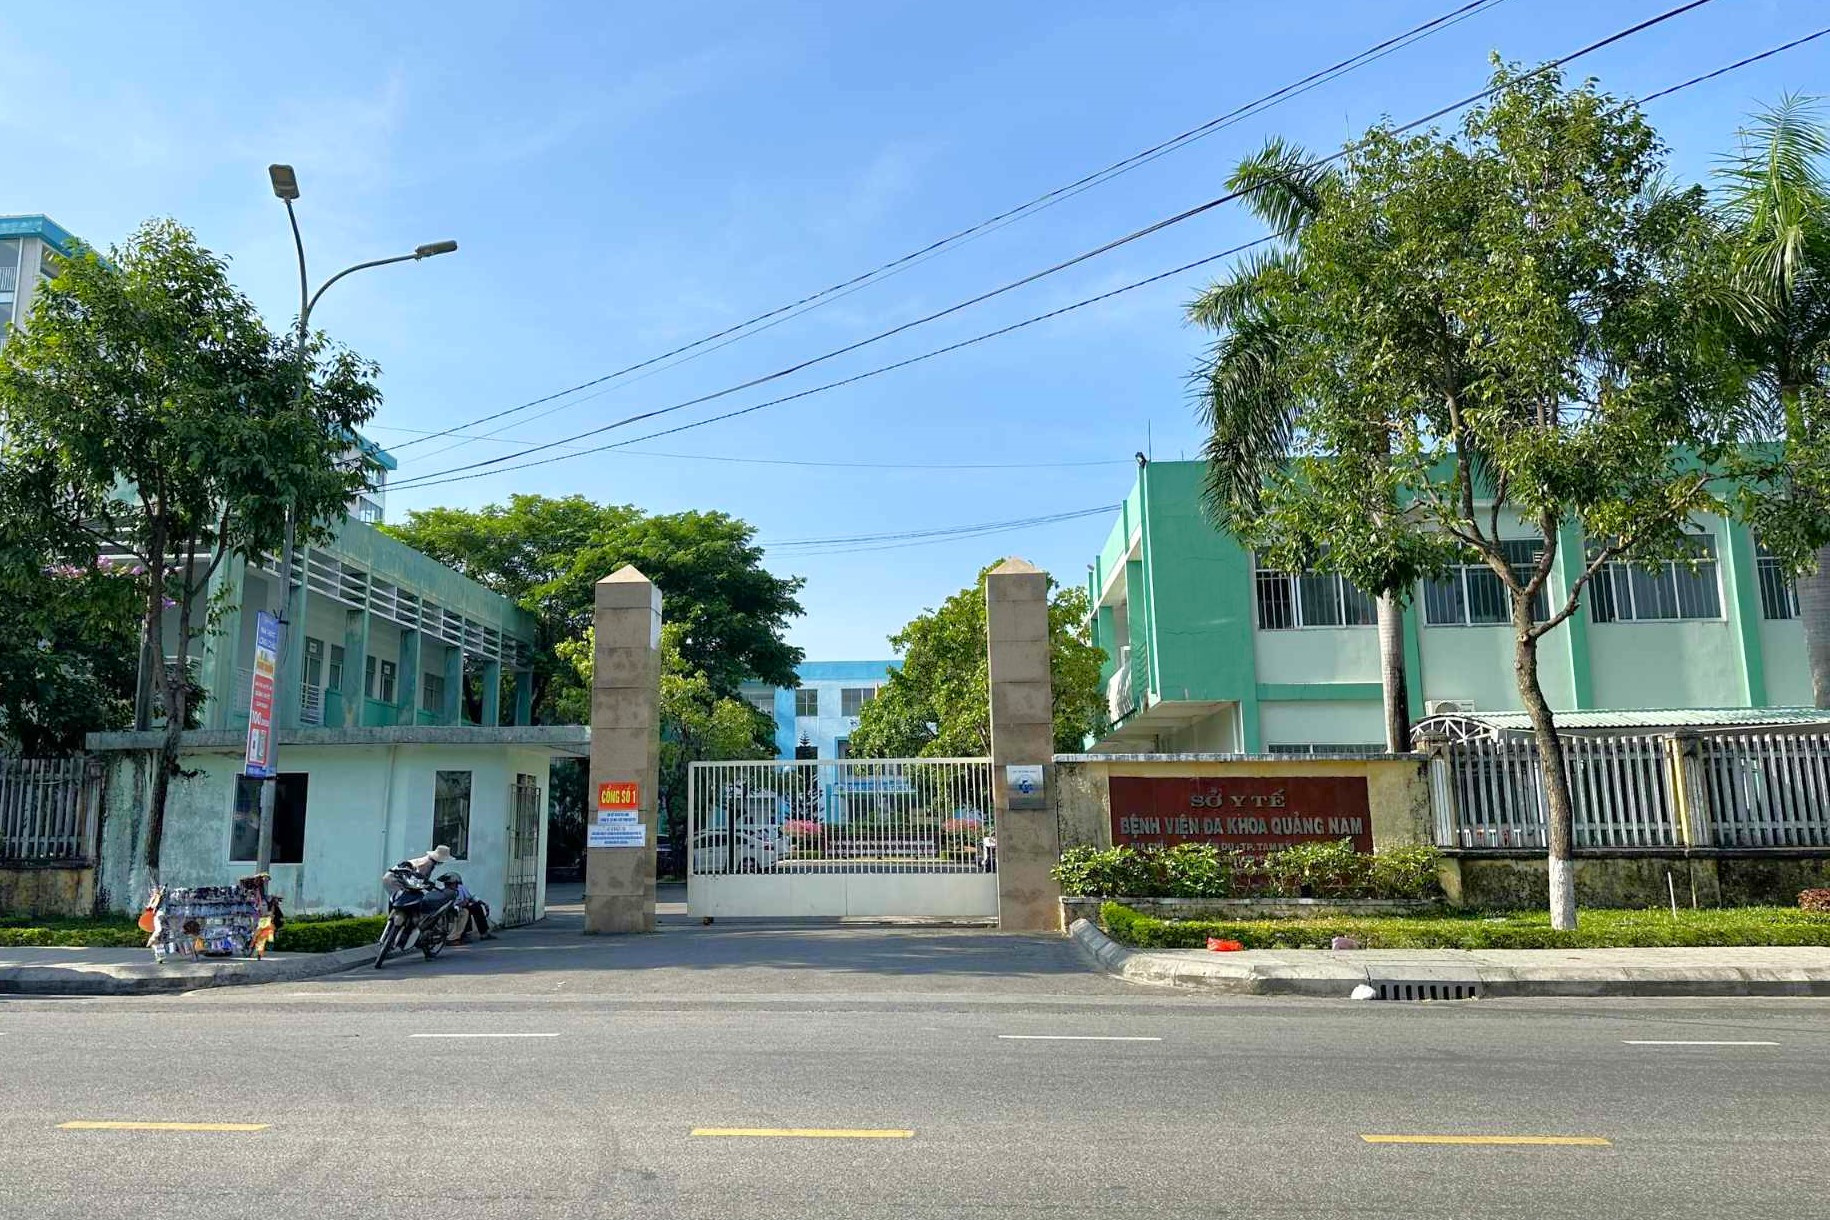  Chẩn đoán có u bên phải, bác sĩ lại mổ bên trái: Bệnh viện ở Quảng Nam lên tiếng 